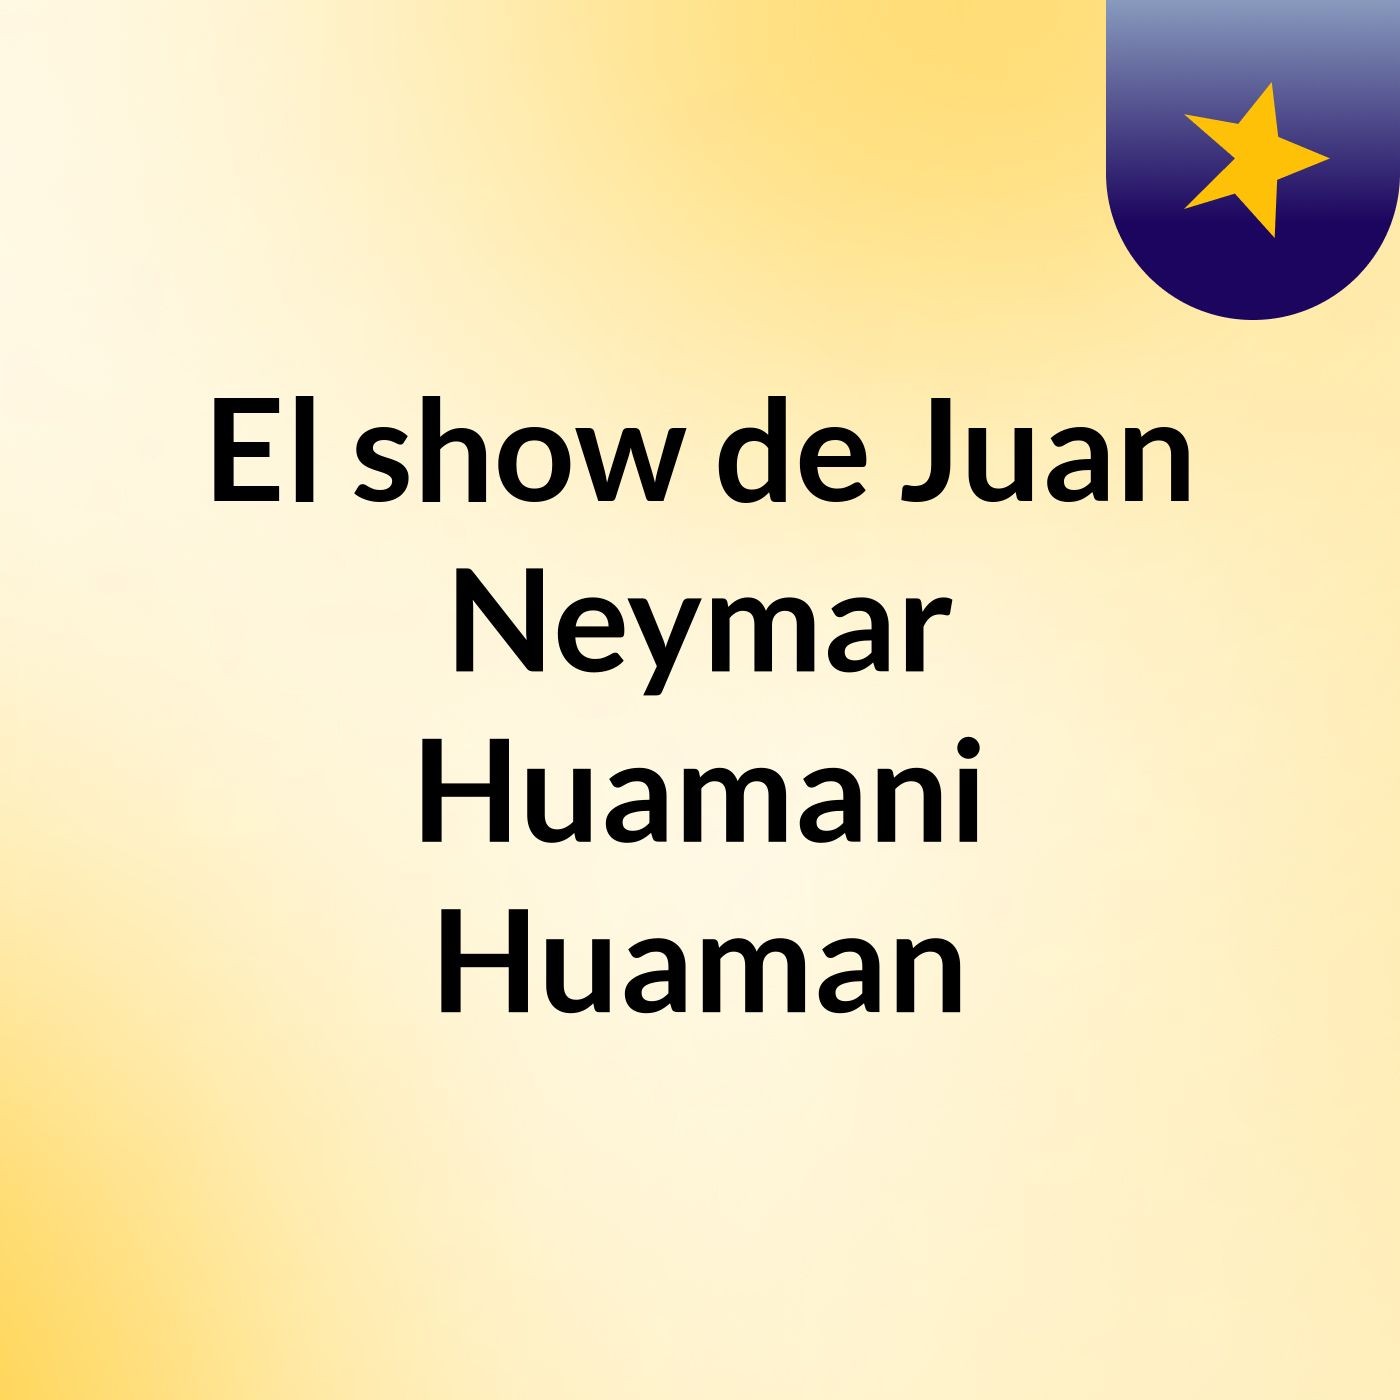 El show de Juan Neymar  Huamani Huaman